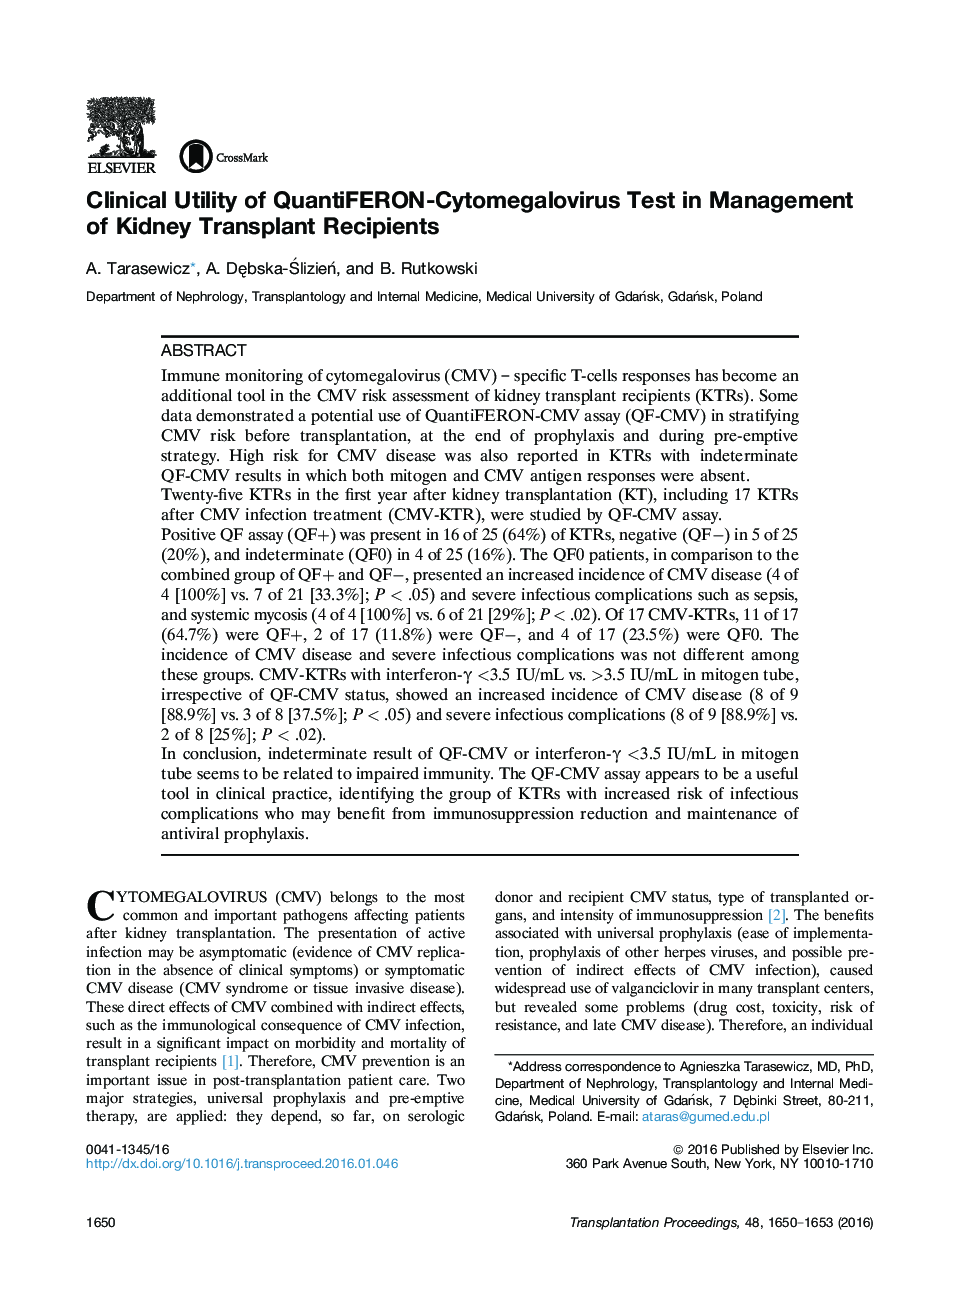 استفاده بالینی از آزمون QuantiFERON-Cytomegalovirus در مدیریت گیرندگان پیوند کلیه